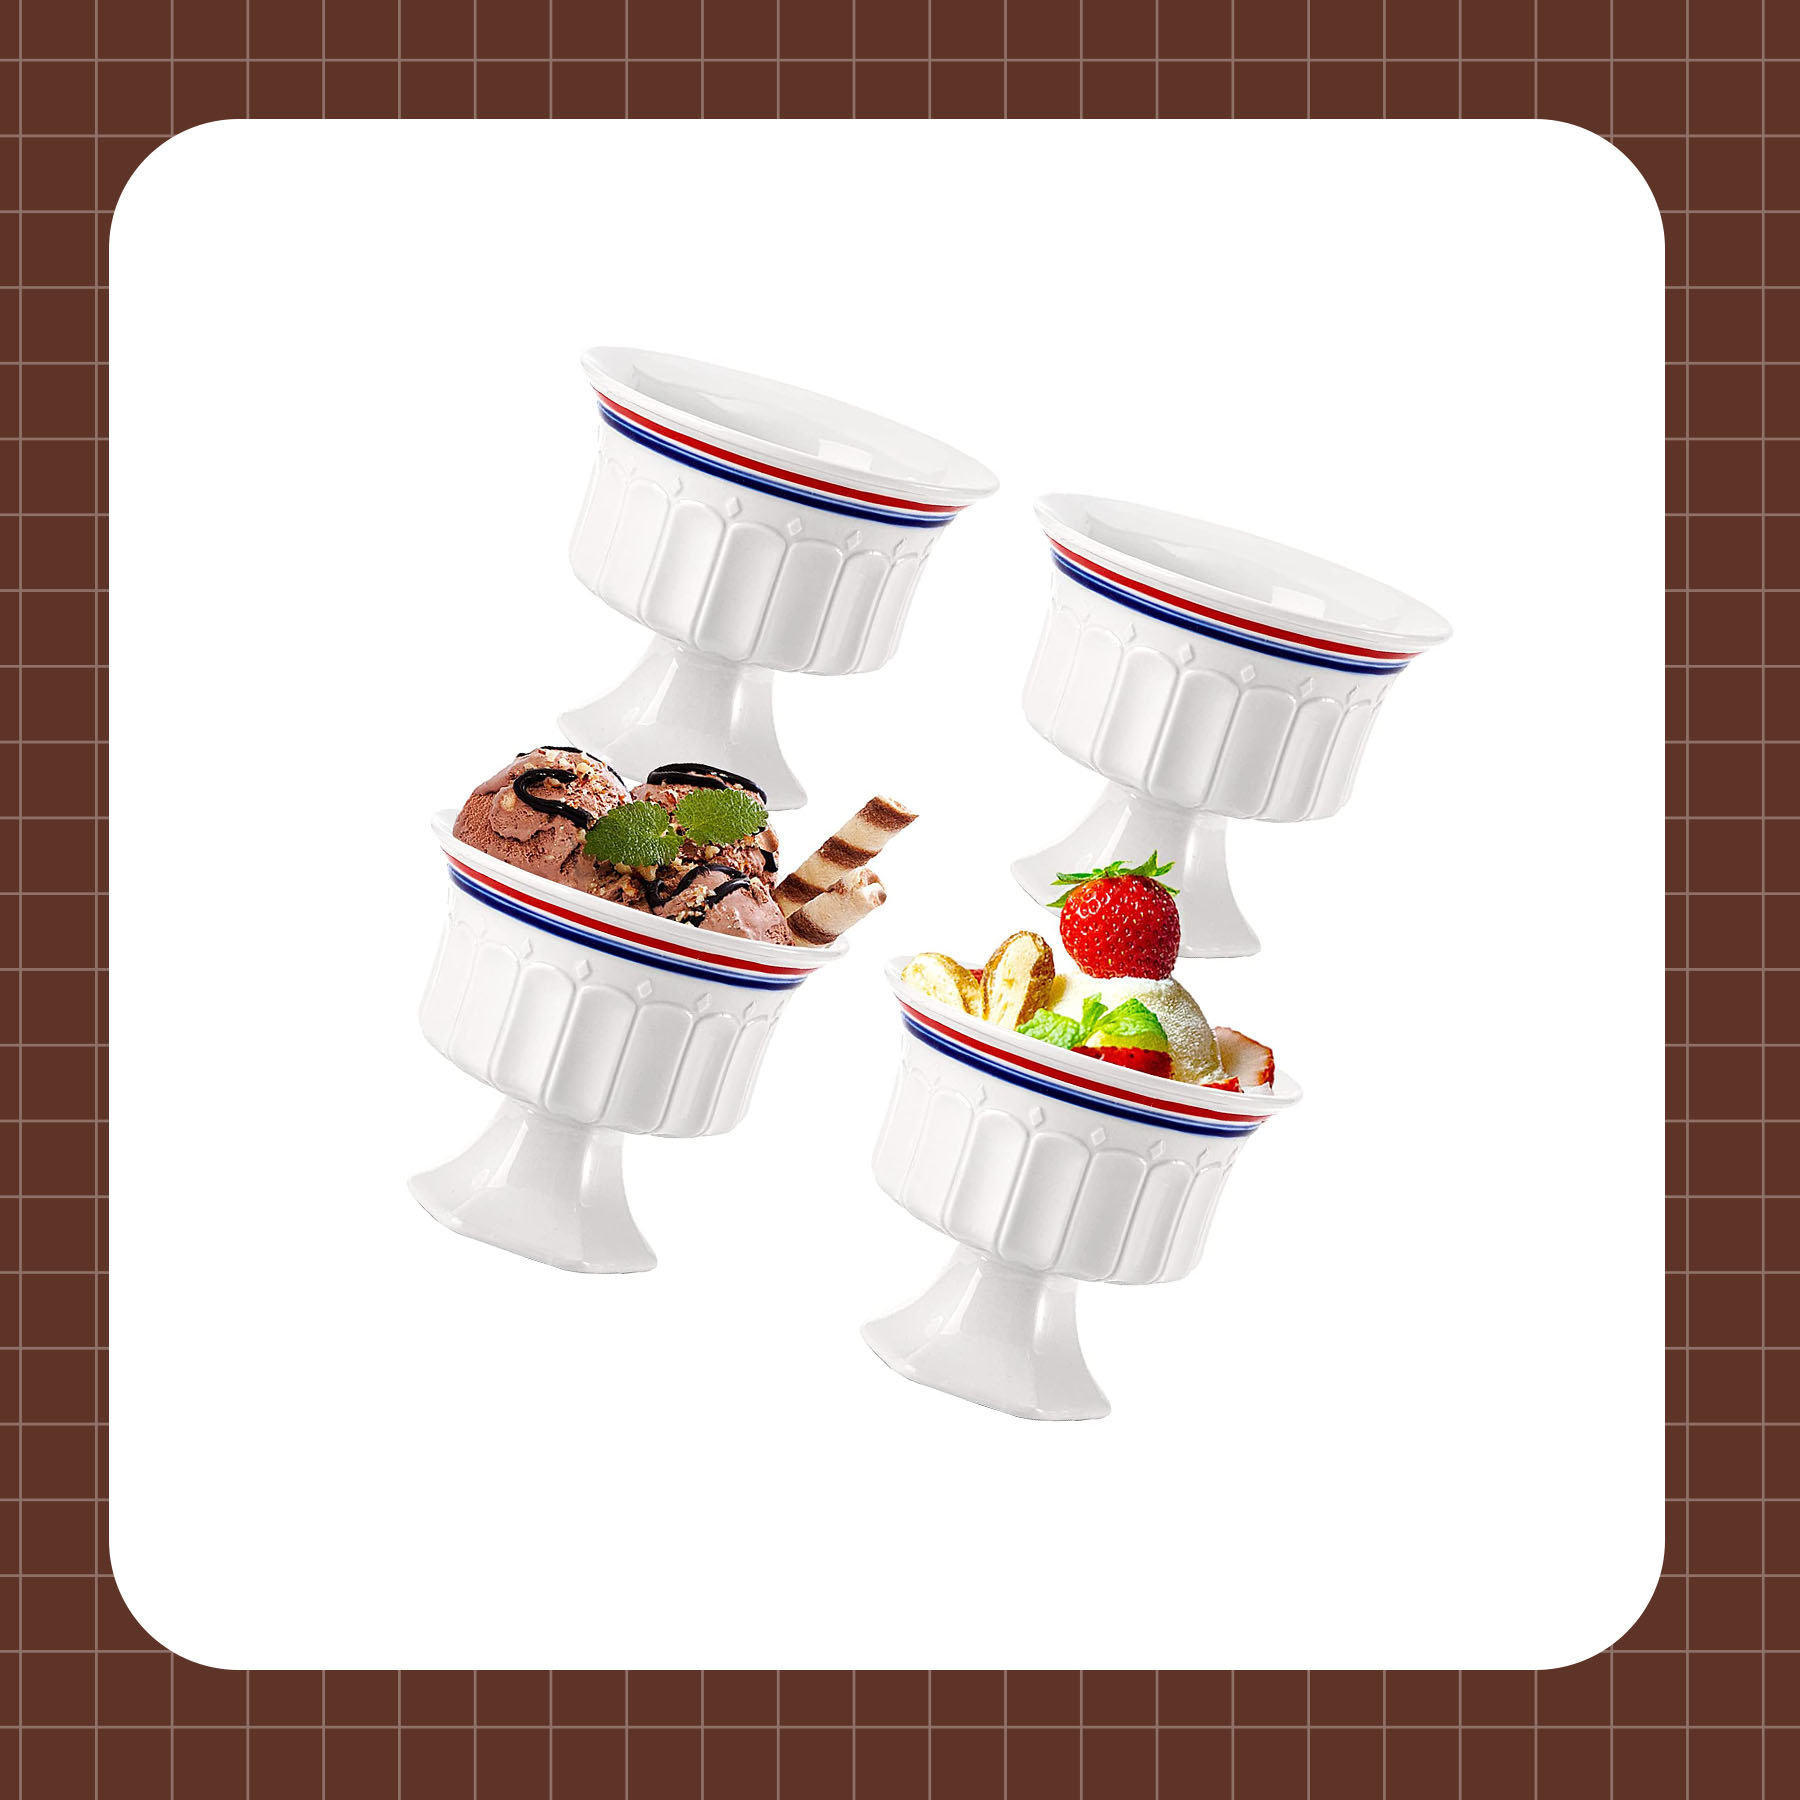 https://assets.wfcdn.com/im/28630050/compr-r85/2387/238730605/ceramic-dessert-bowls-10-oz-footed-ice-cream-sundae-cups-dessert-dishes-serving-bowls-for-snack-milkshakes-parfaits-pudding-fruit-salad-cereal-fruit.jpg